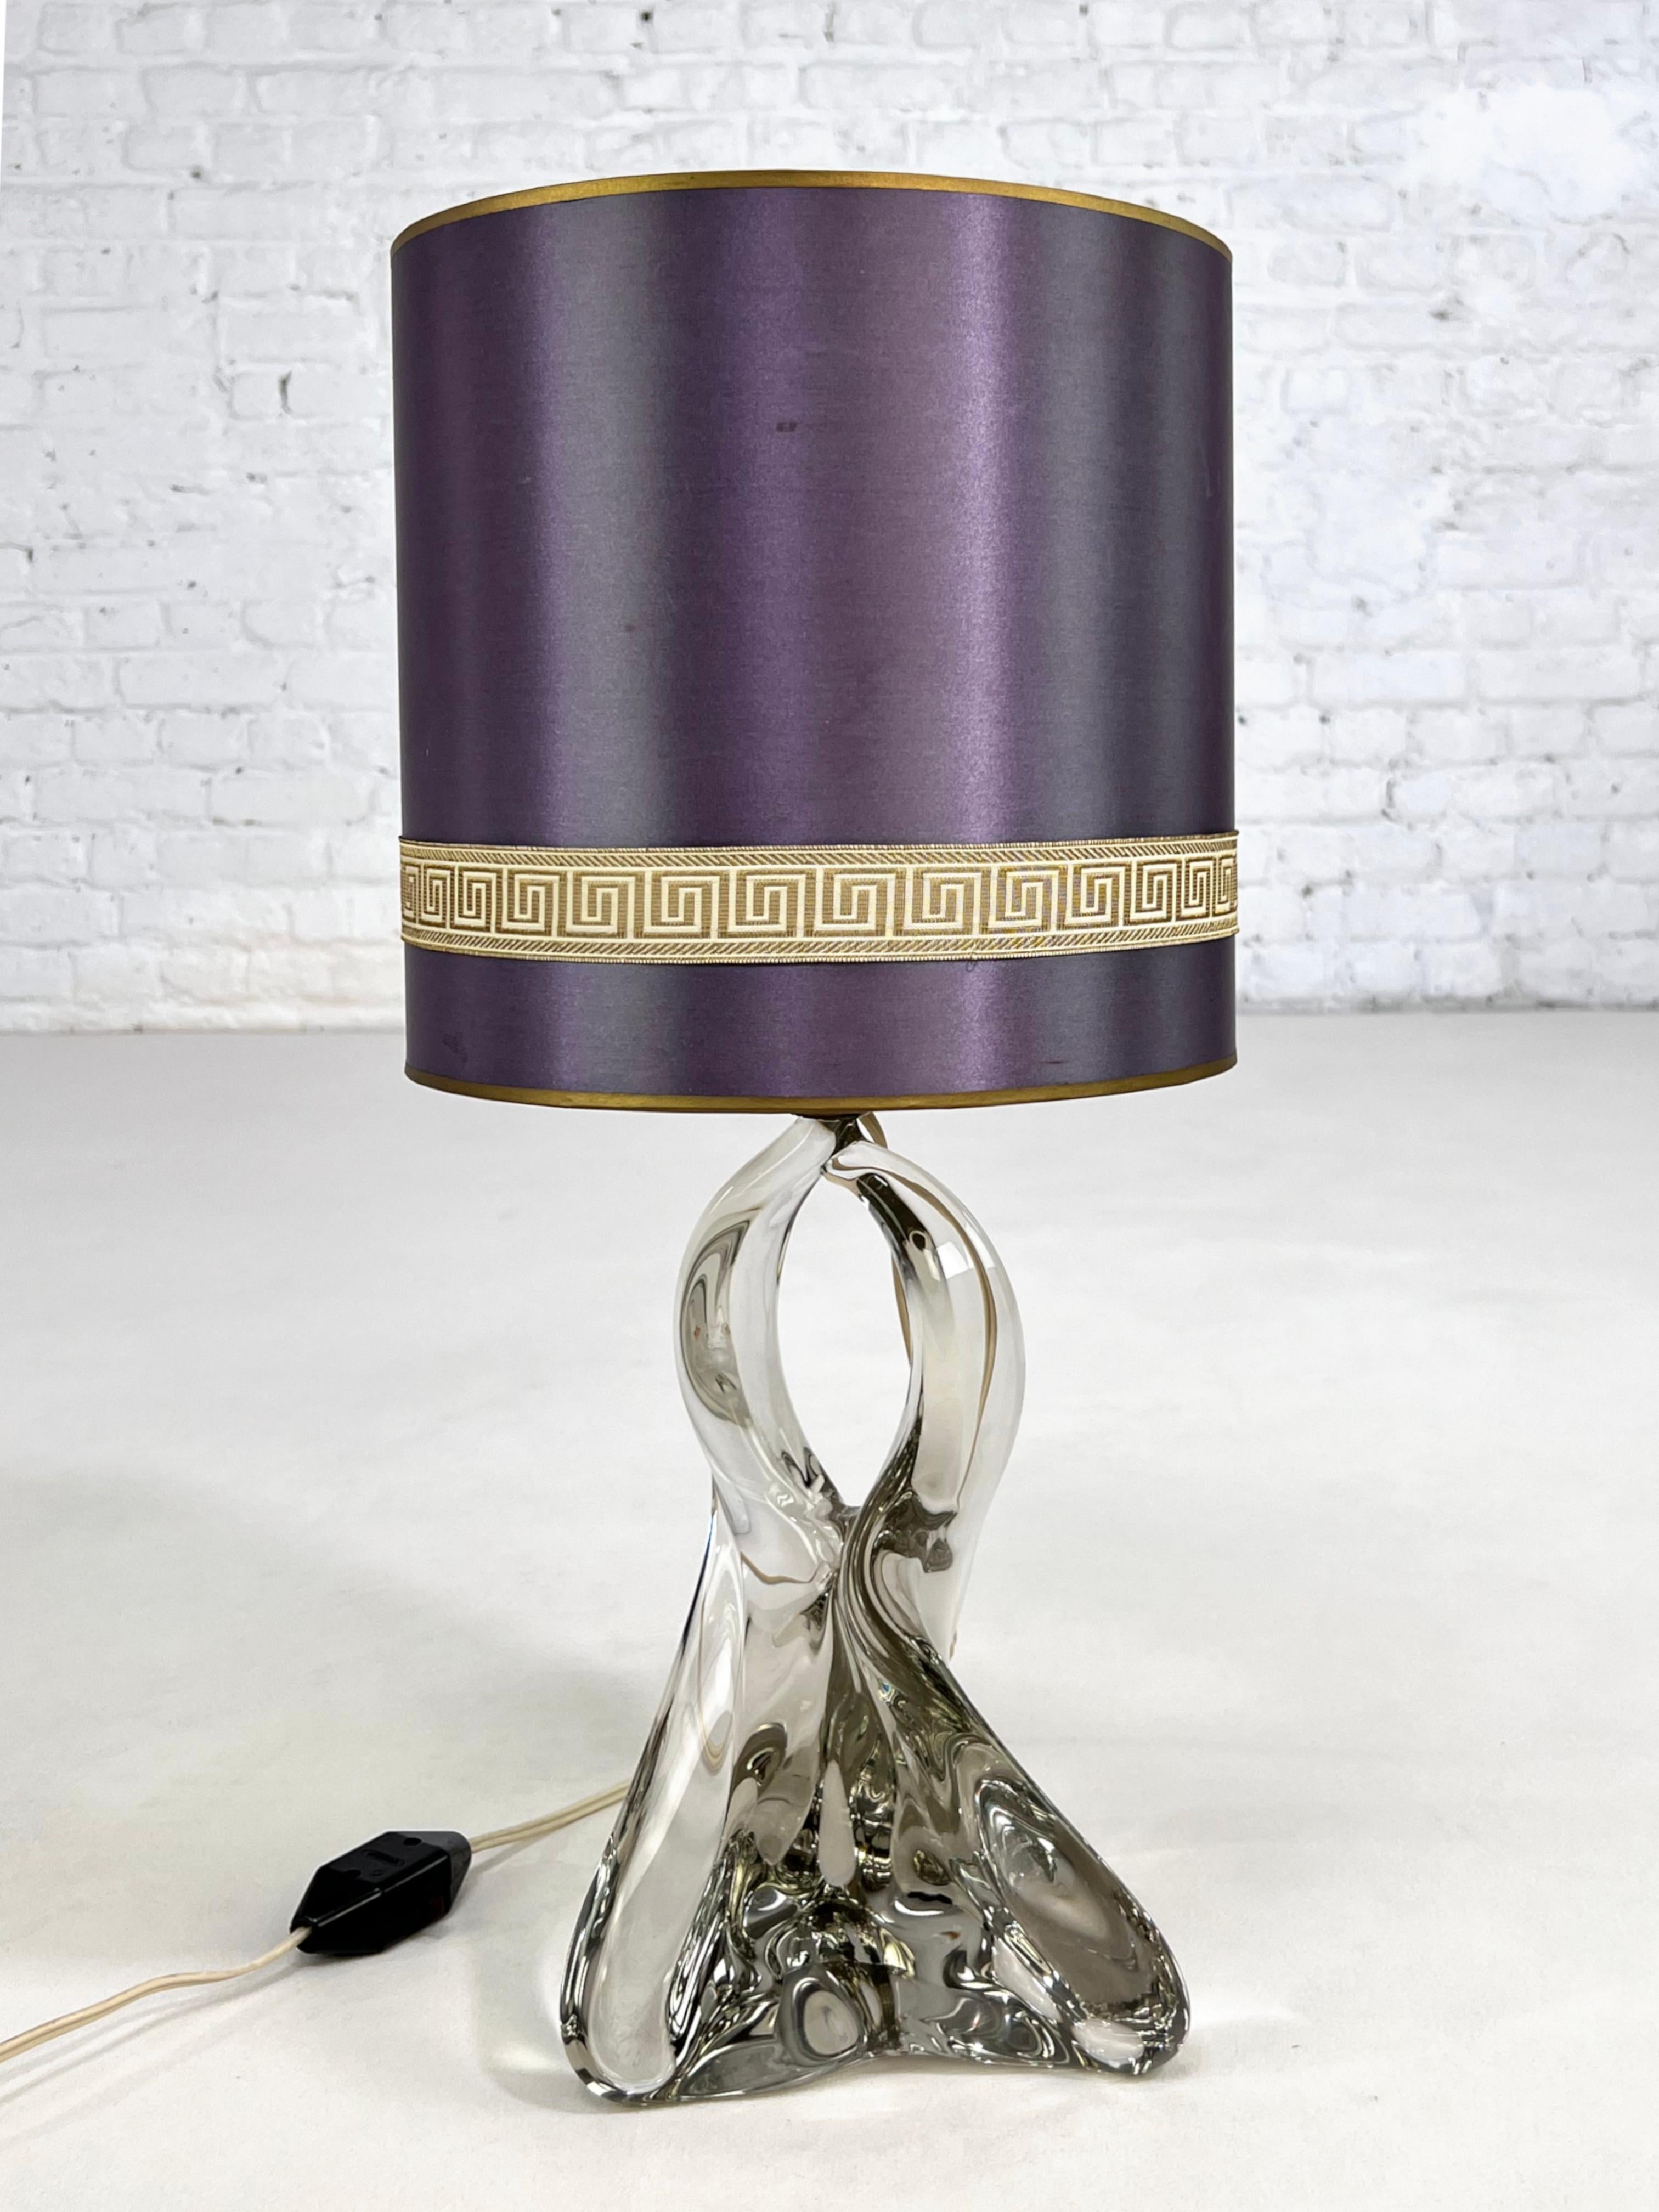 Kristallglas-Tischlampe aus den 1950er Jahren mit originalem Lampenschirm.